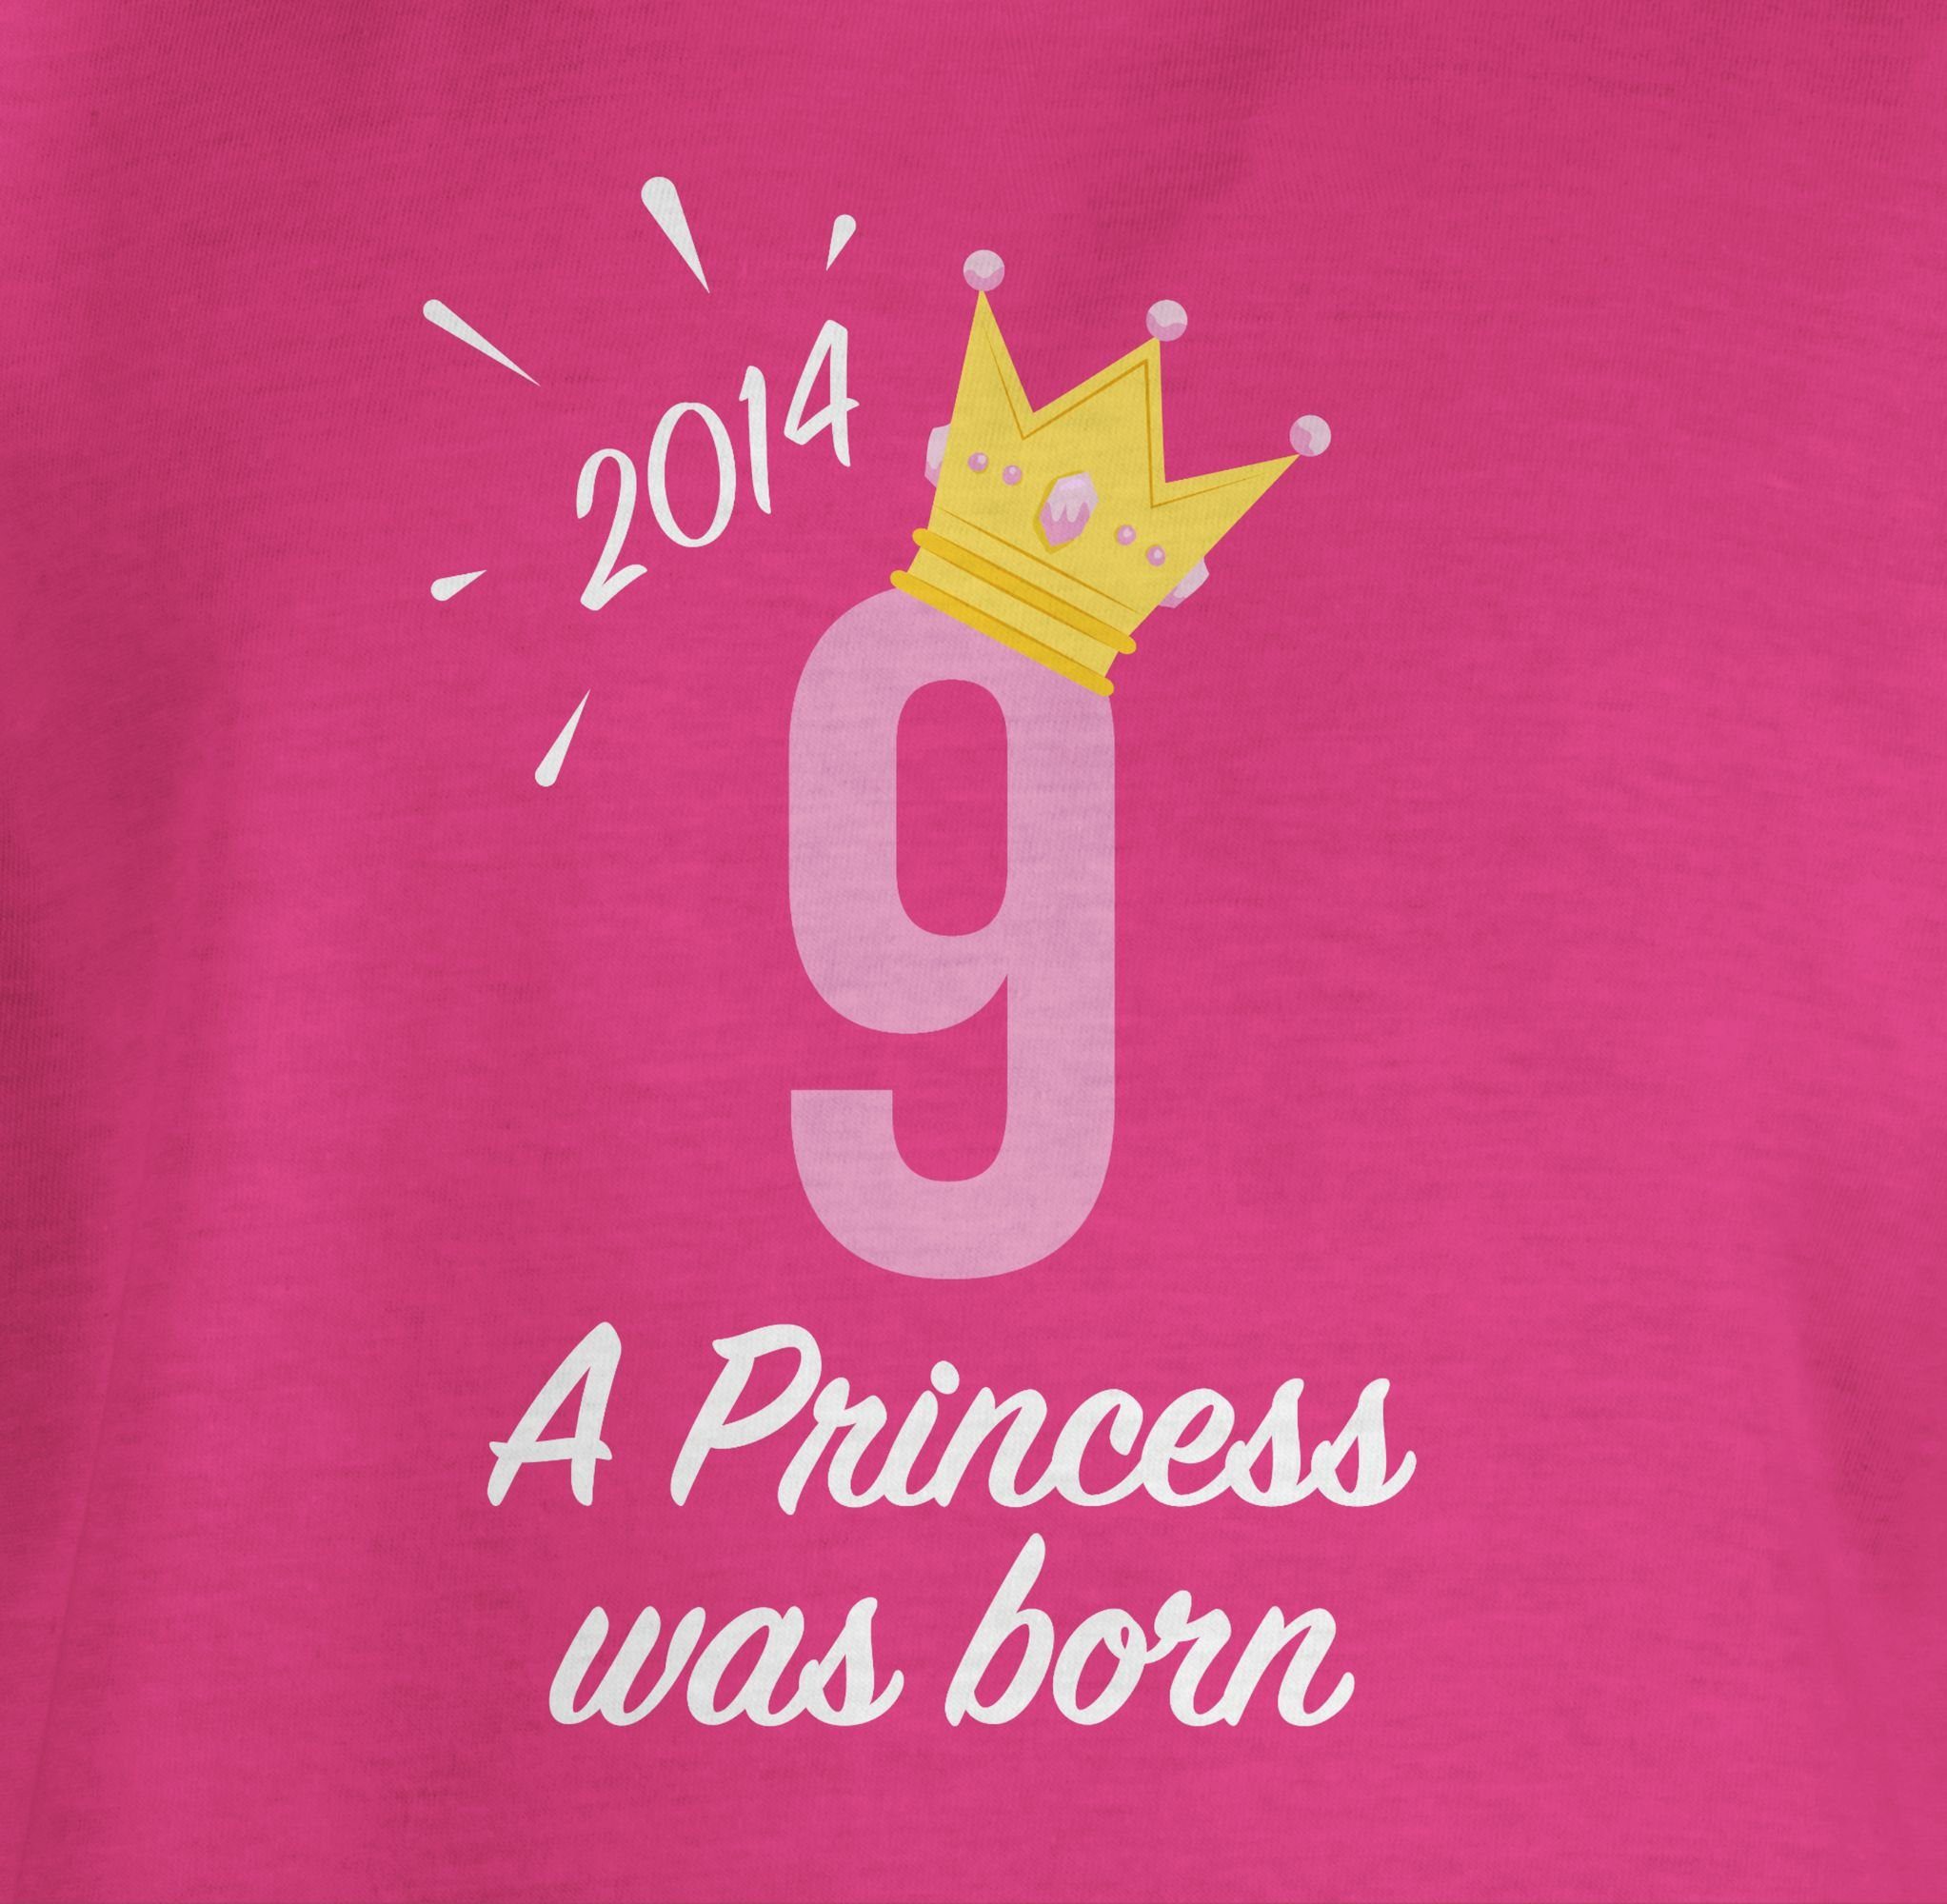 Shirtracer T-Shirt 2 Geburtstag Fuchsia Mädchen 9. Neunter Princess 2014